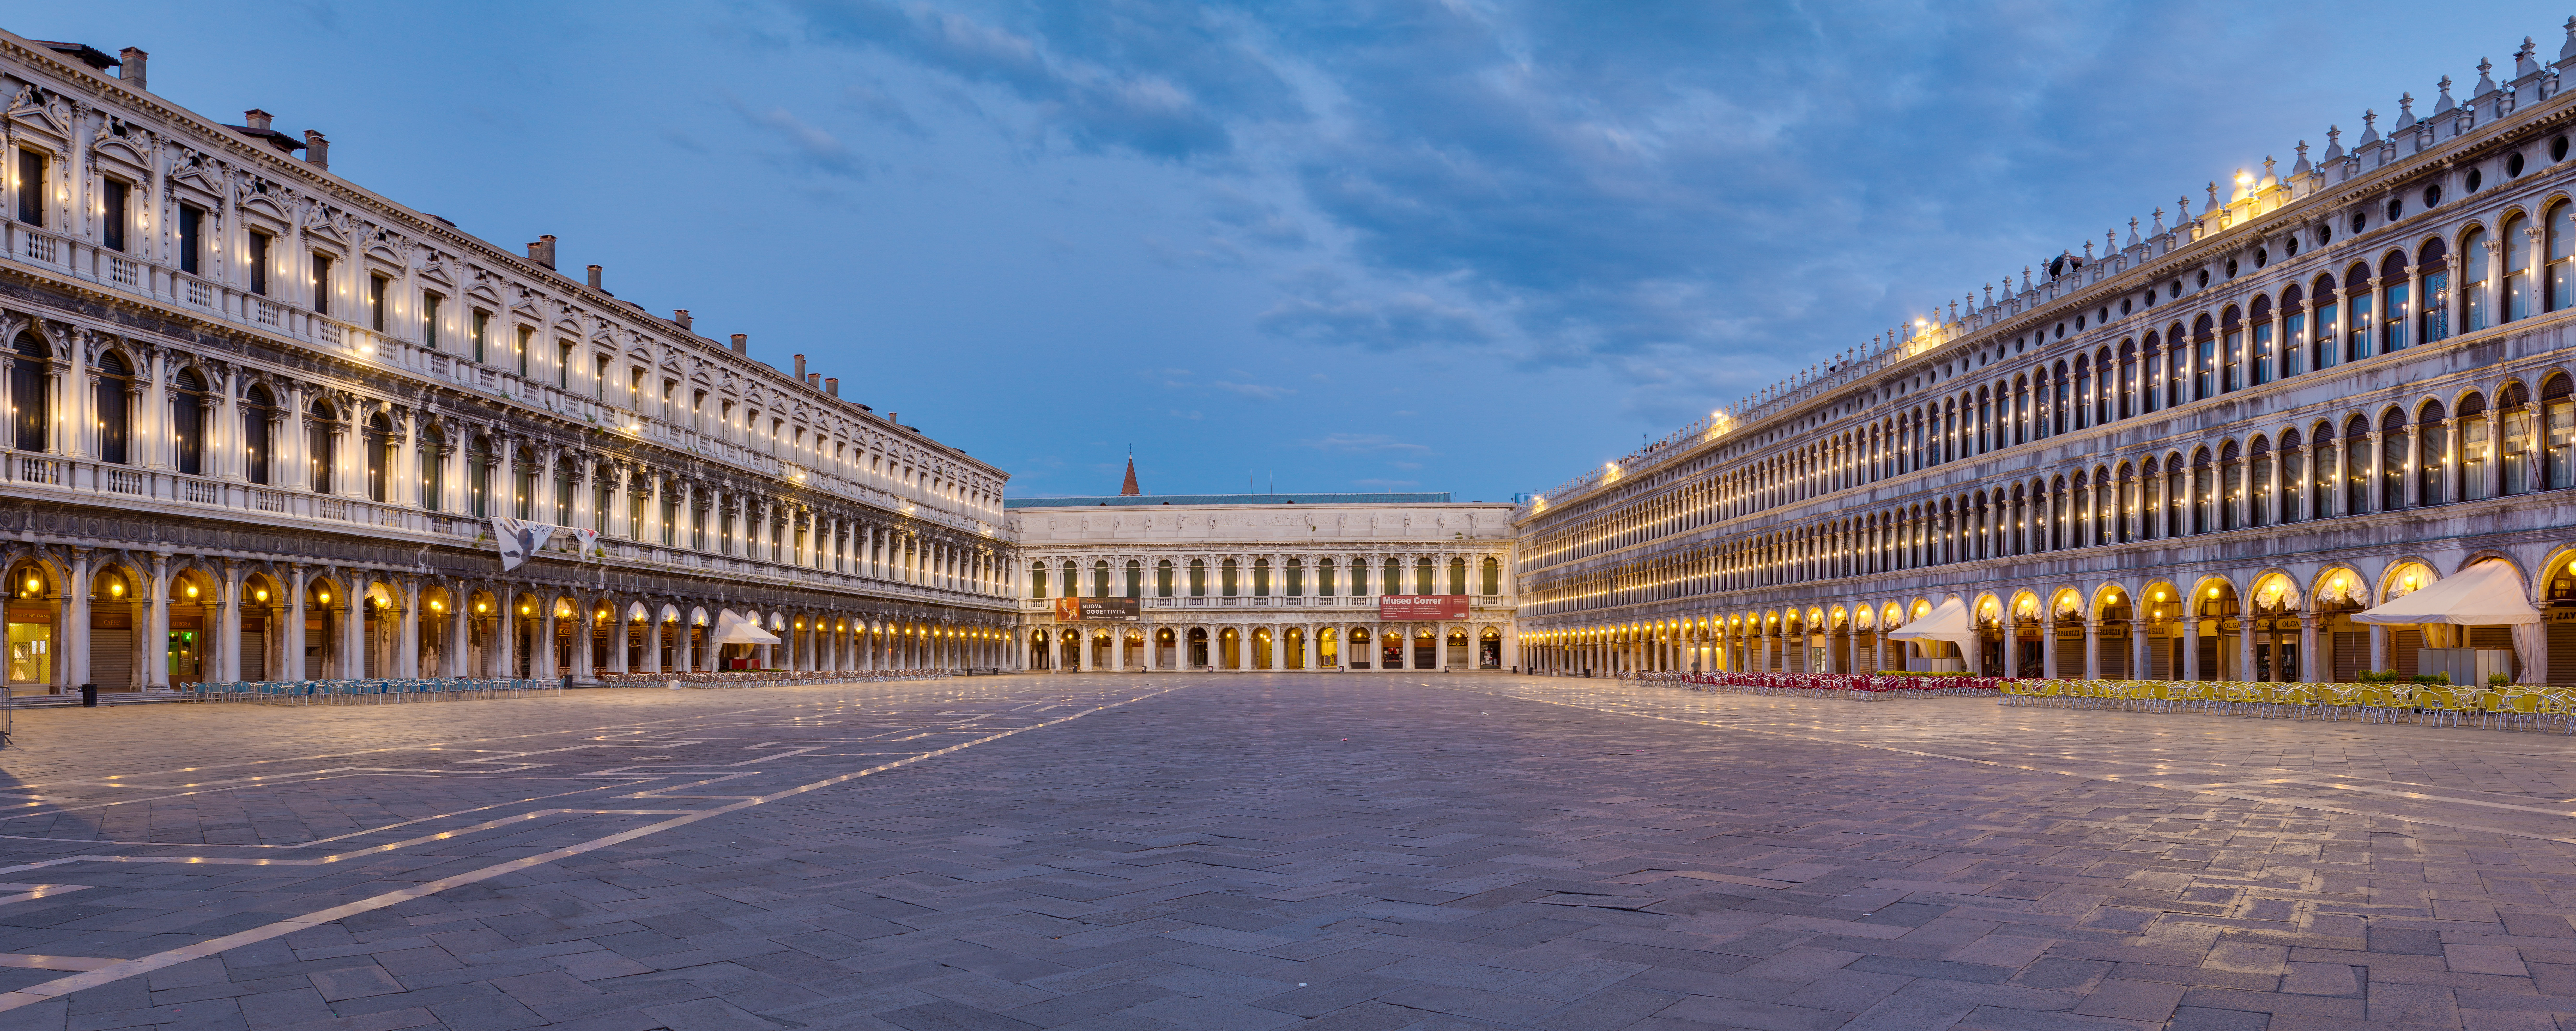 Венеция. Площадь Сан-Марко. Вечер. Источник иллюстрации: Викимедиа